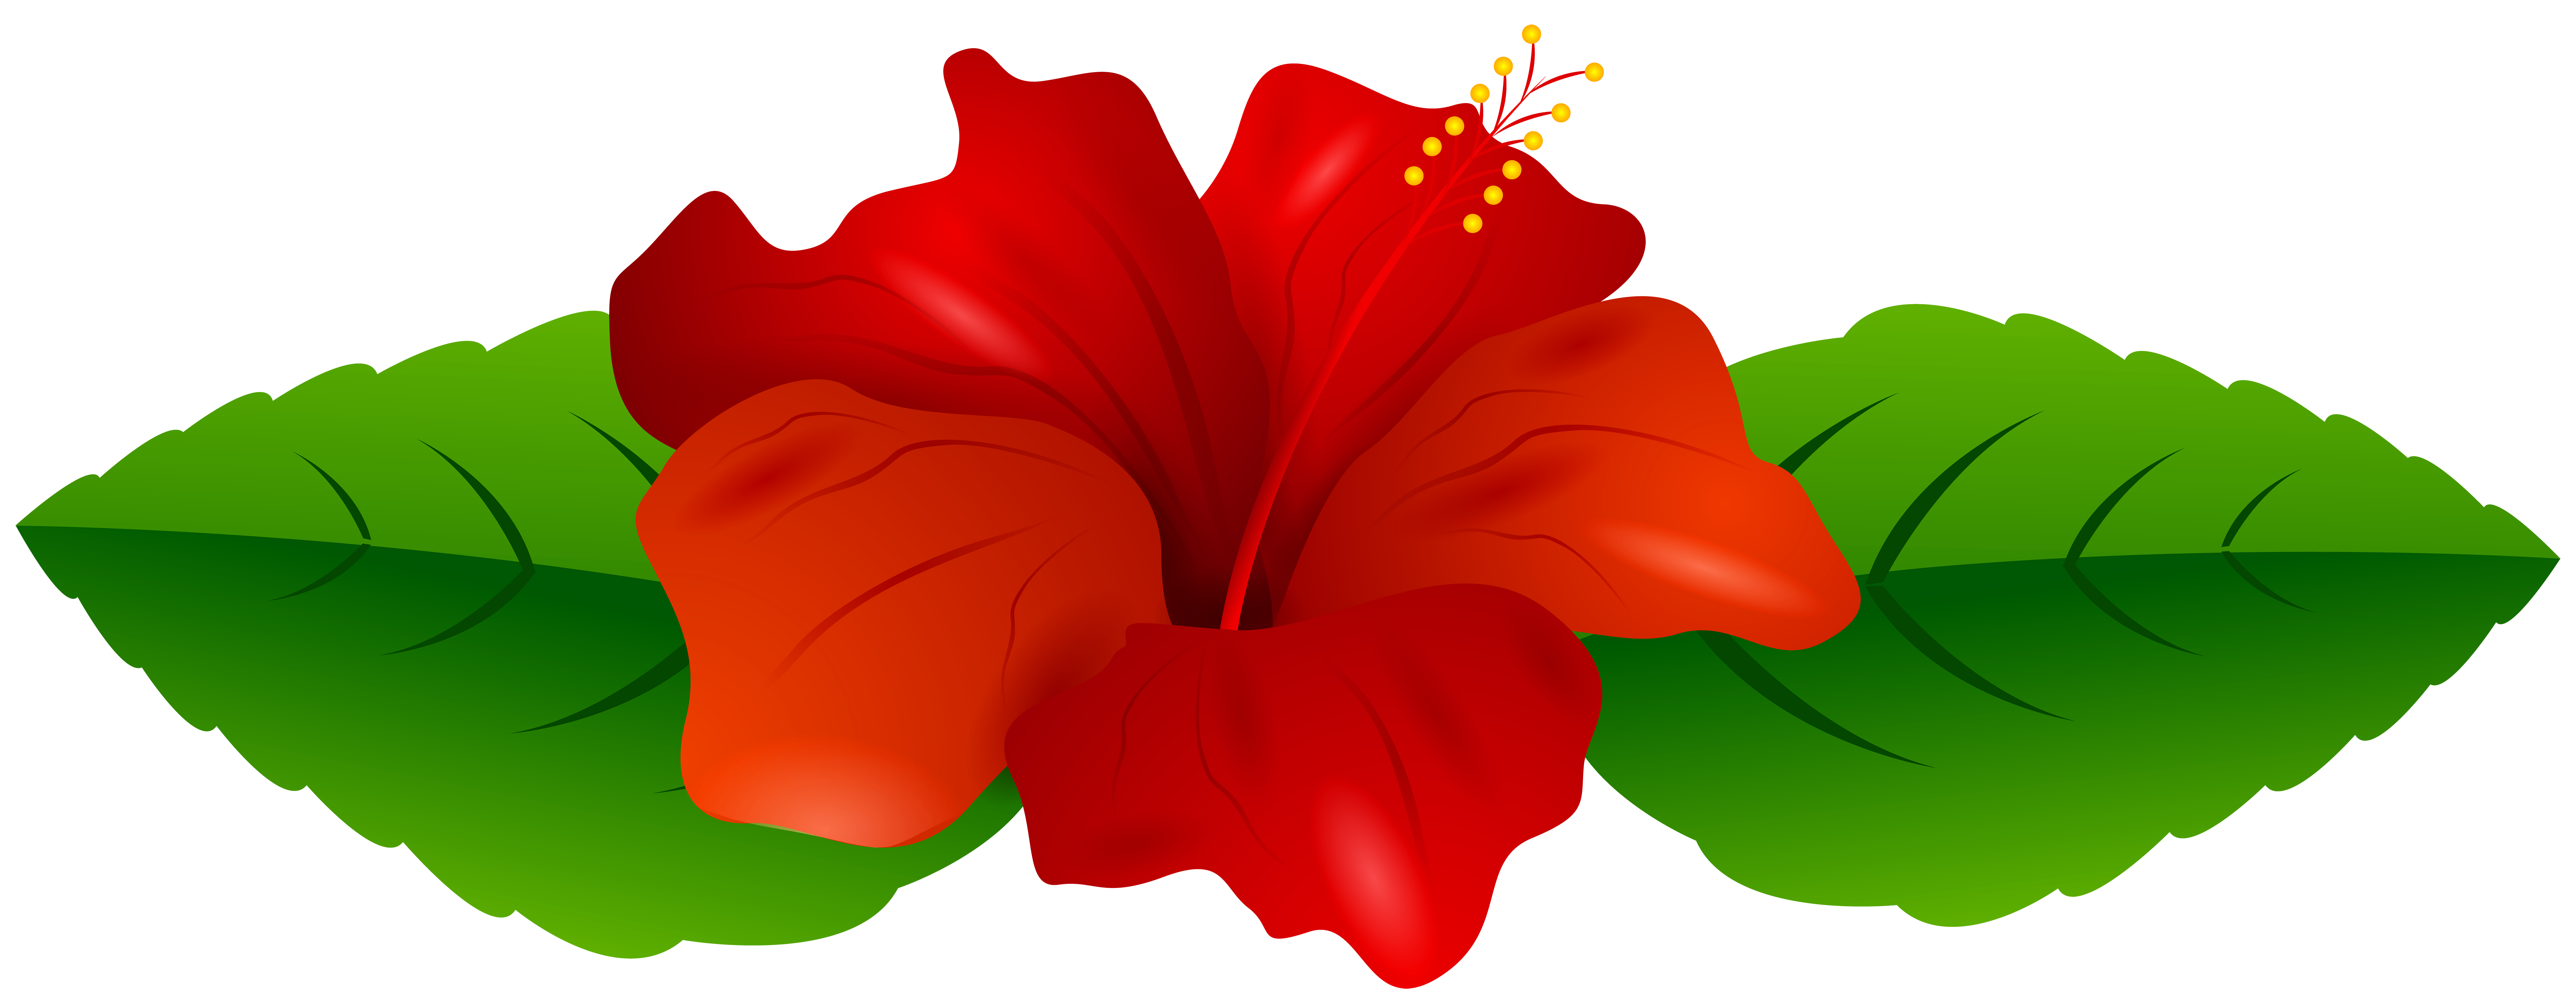 Red hibiscus transparent.